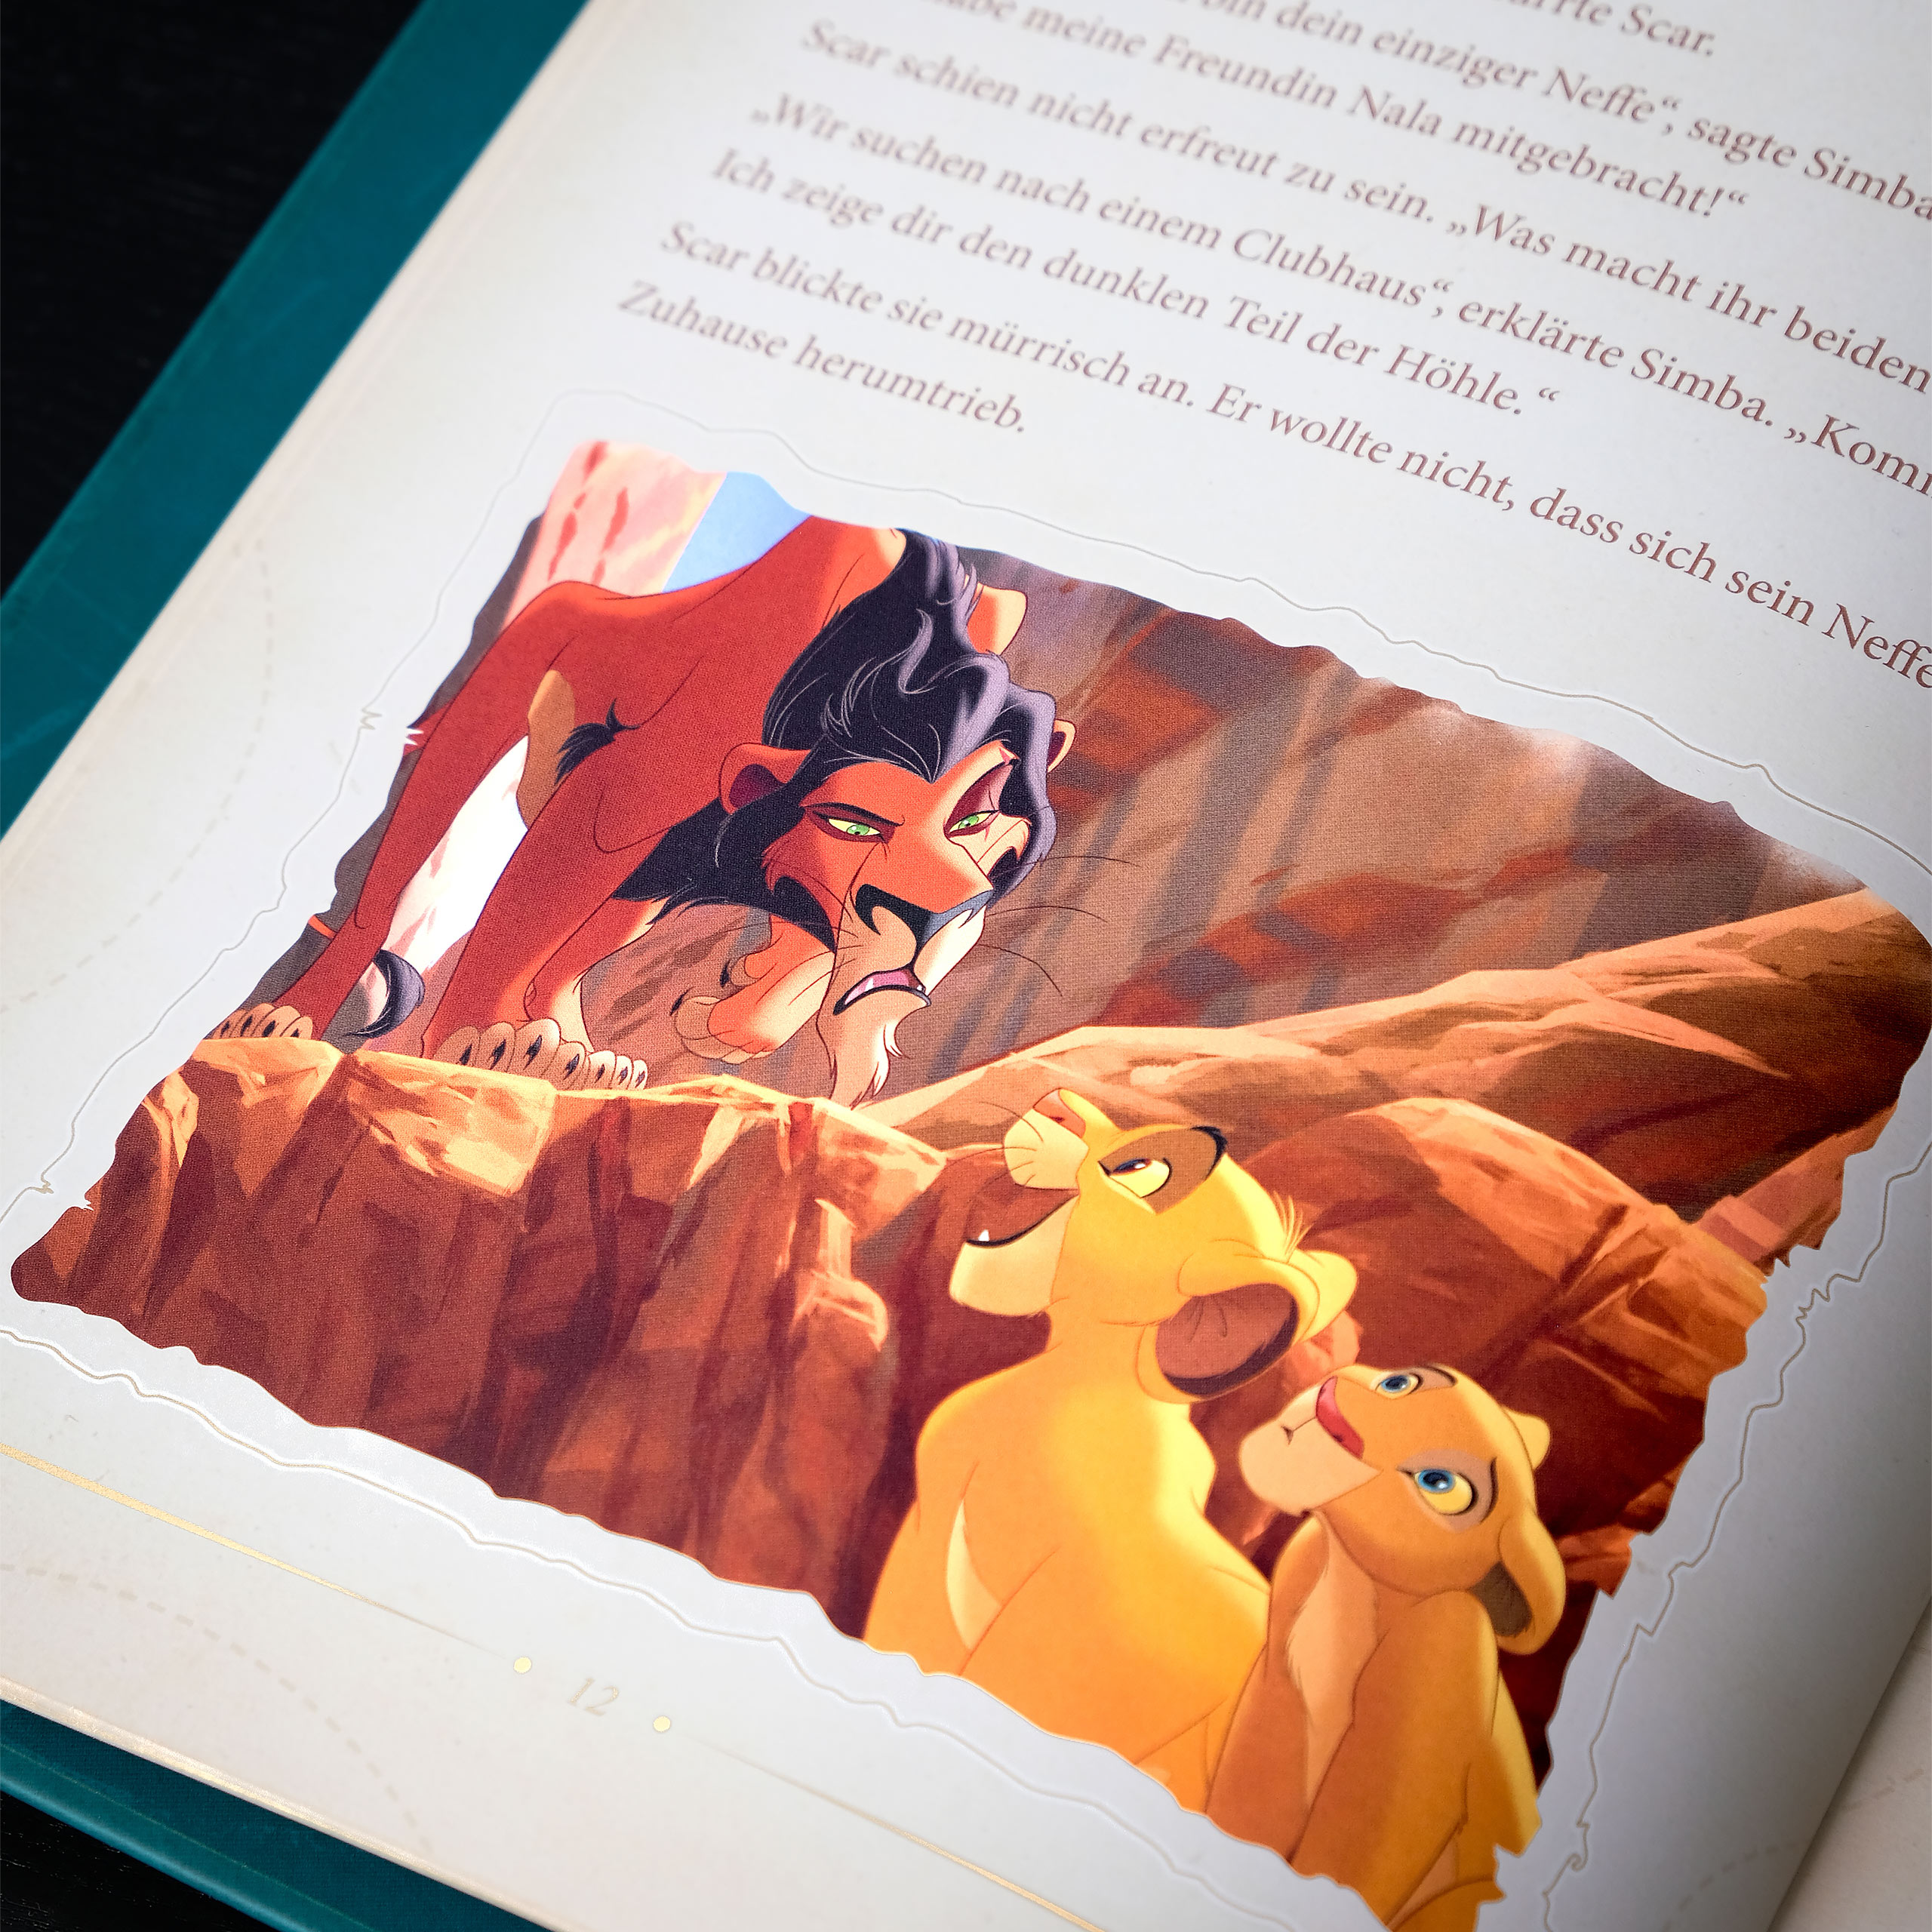 Disney - Het Grote Gouden Boek van Avonturenverhalen